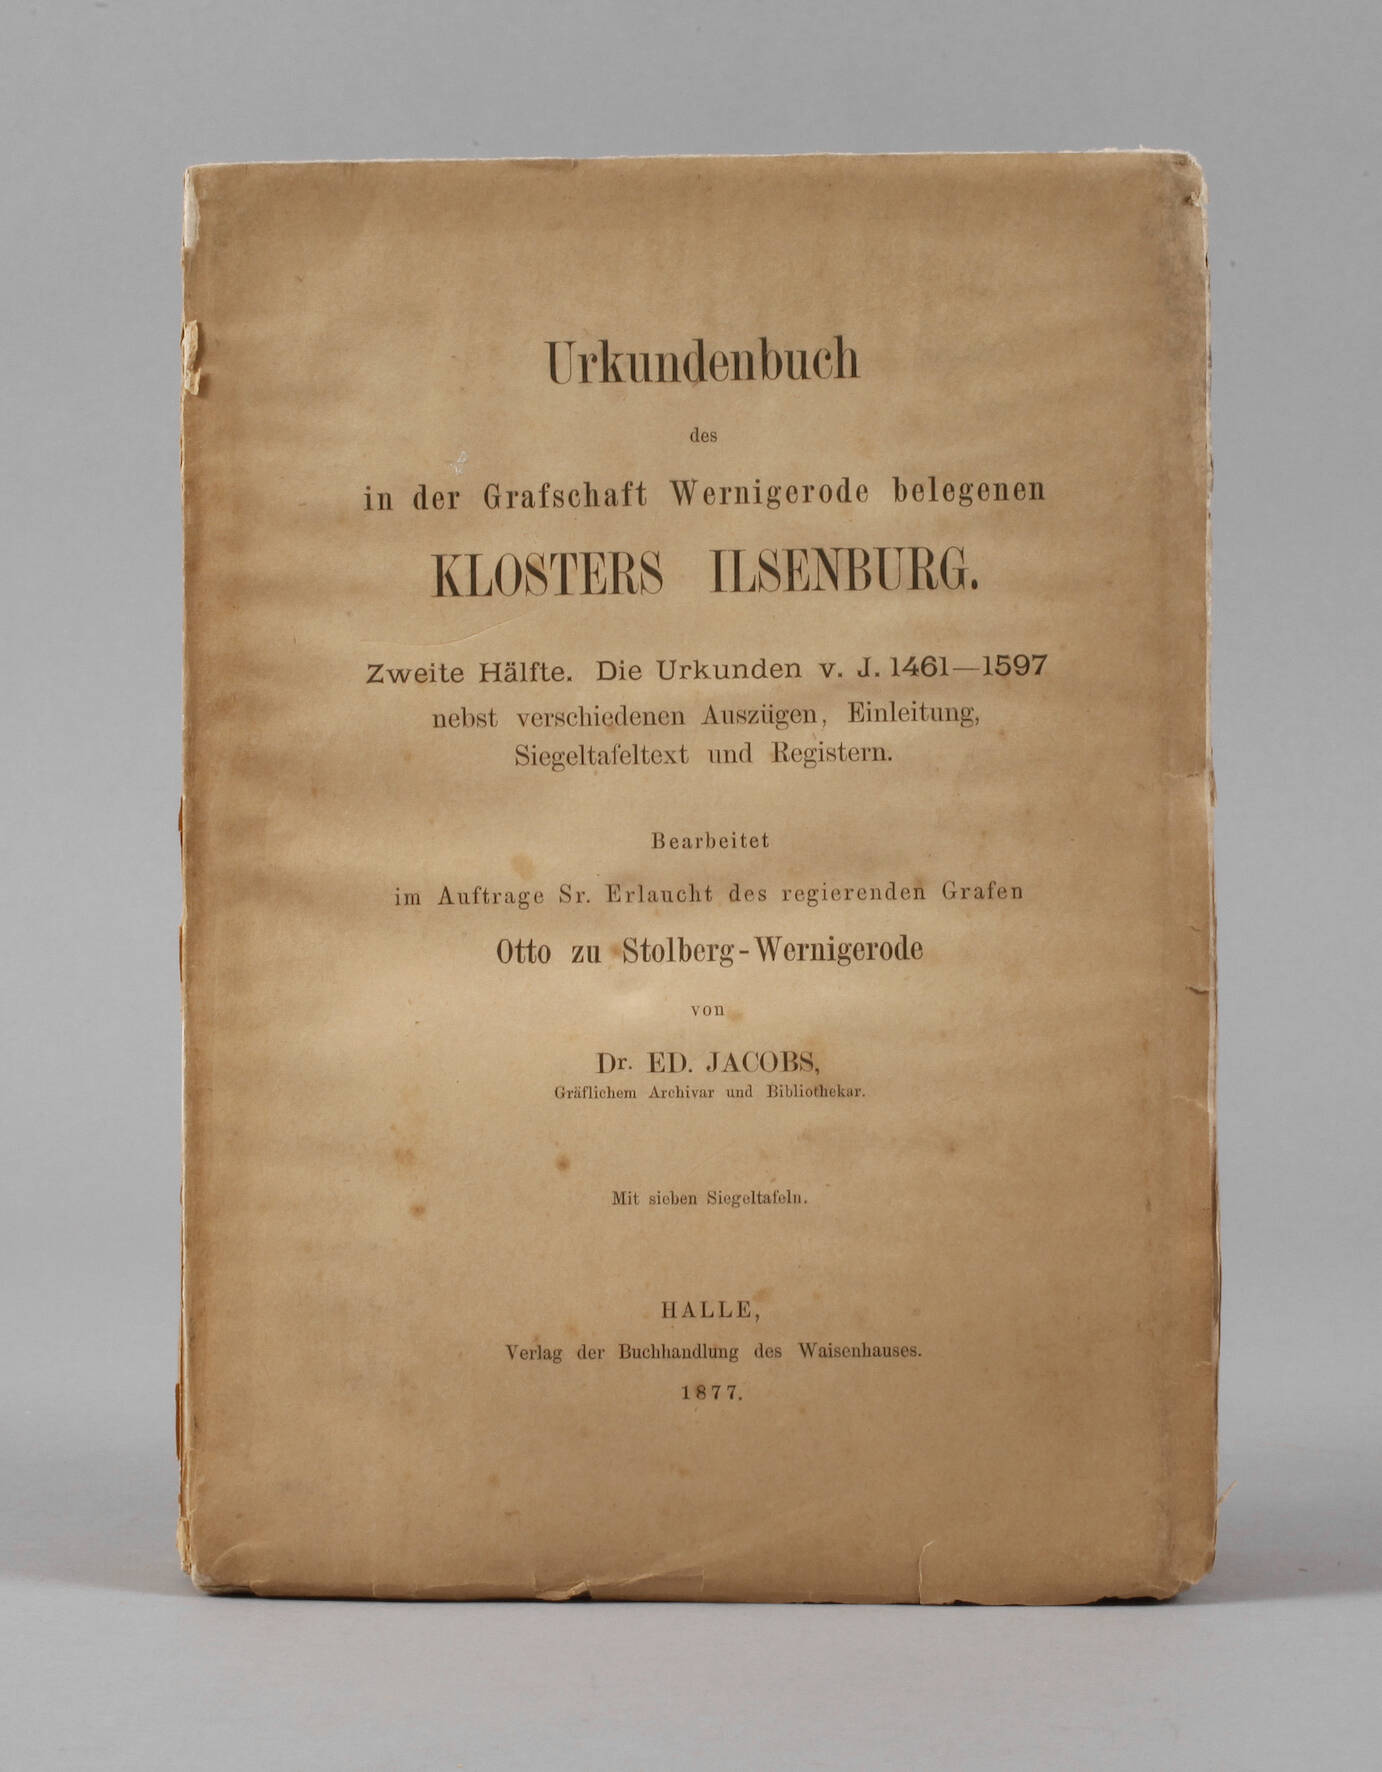 Urkundenbuch des in der Grafschaft Wernigerode